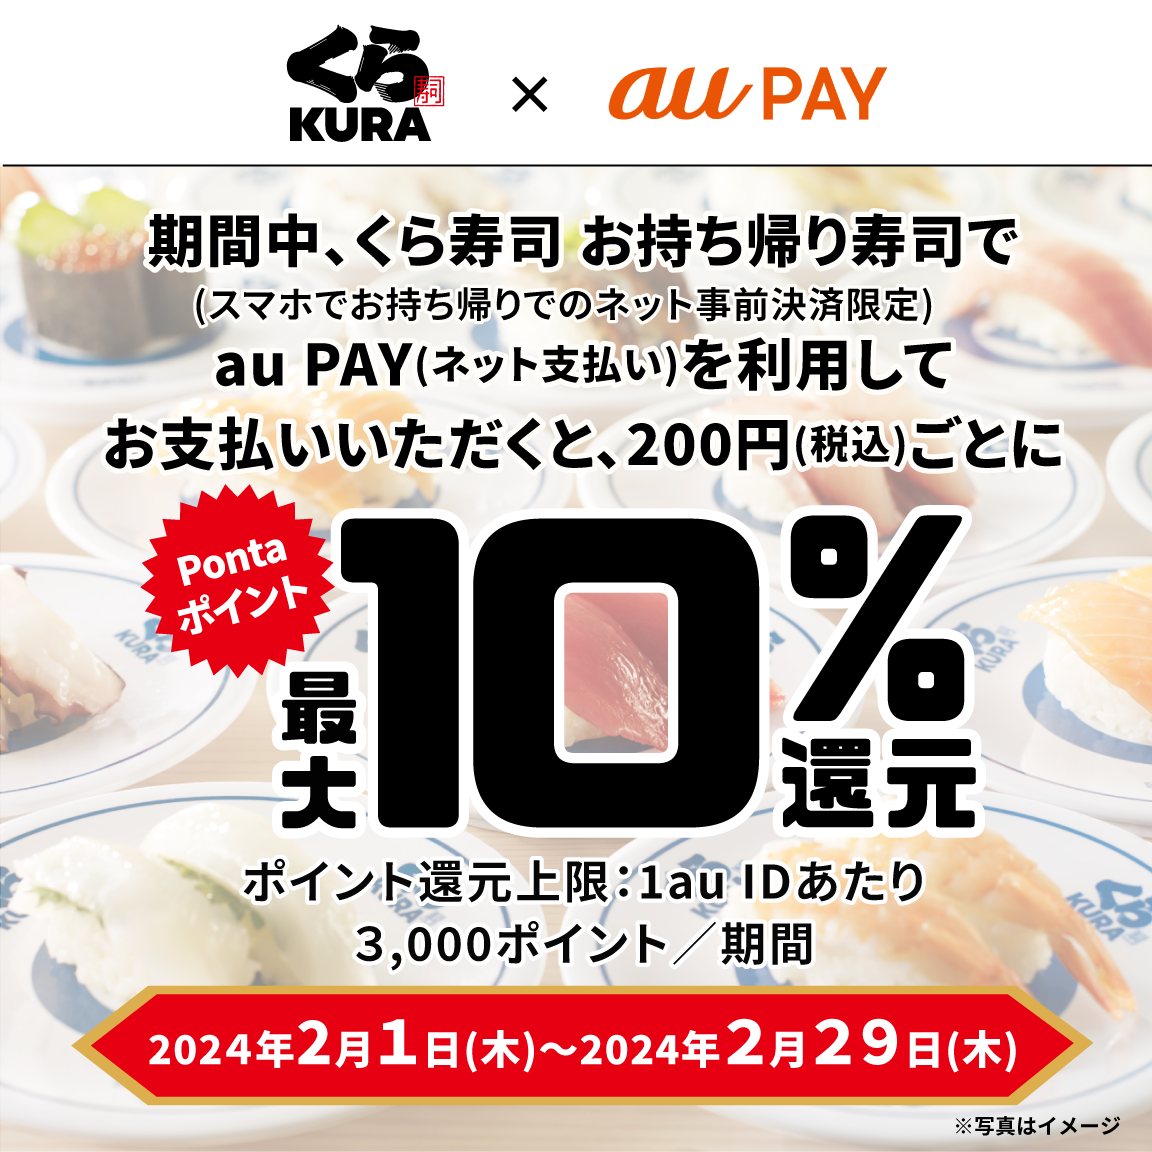 くら寿司 お持ち帰り寿司にてau PAY（ネット支払い）で決済された方を対象に、Pontaポイント最大10％還元！キャンペーン期間：2024年2月1日～2月29日